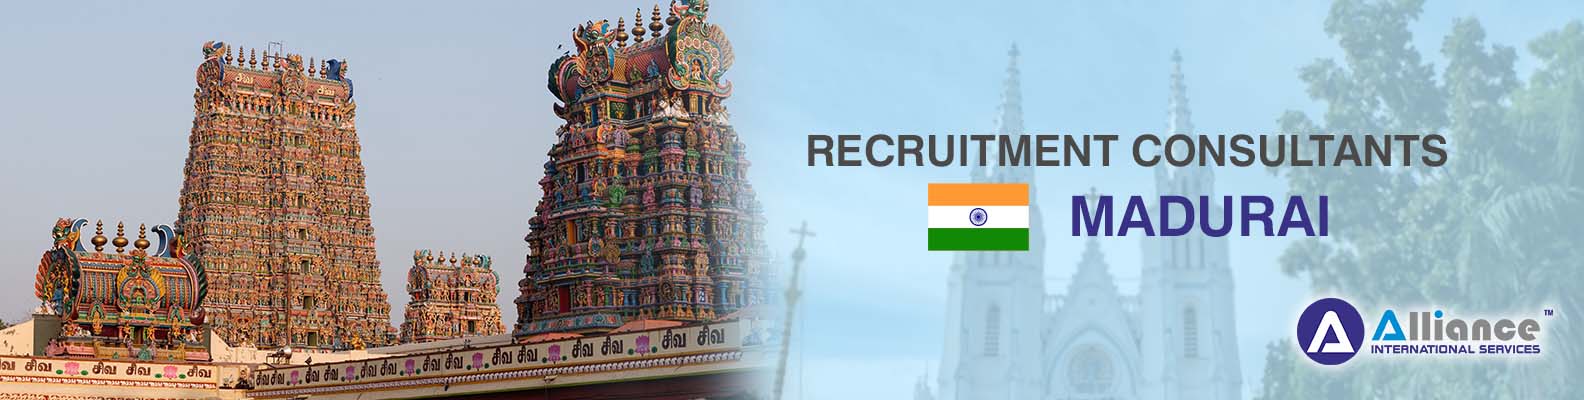 Recruitment Consultants Madurai